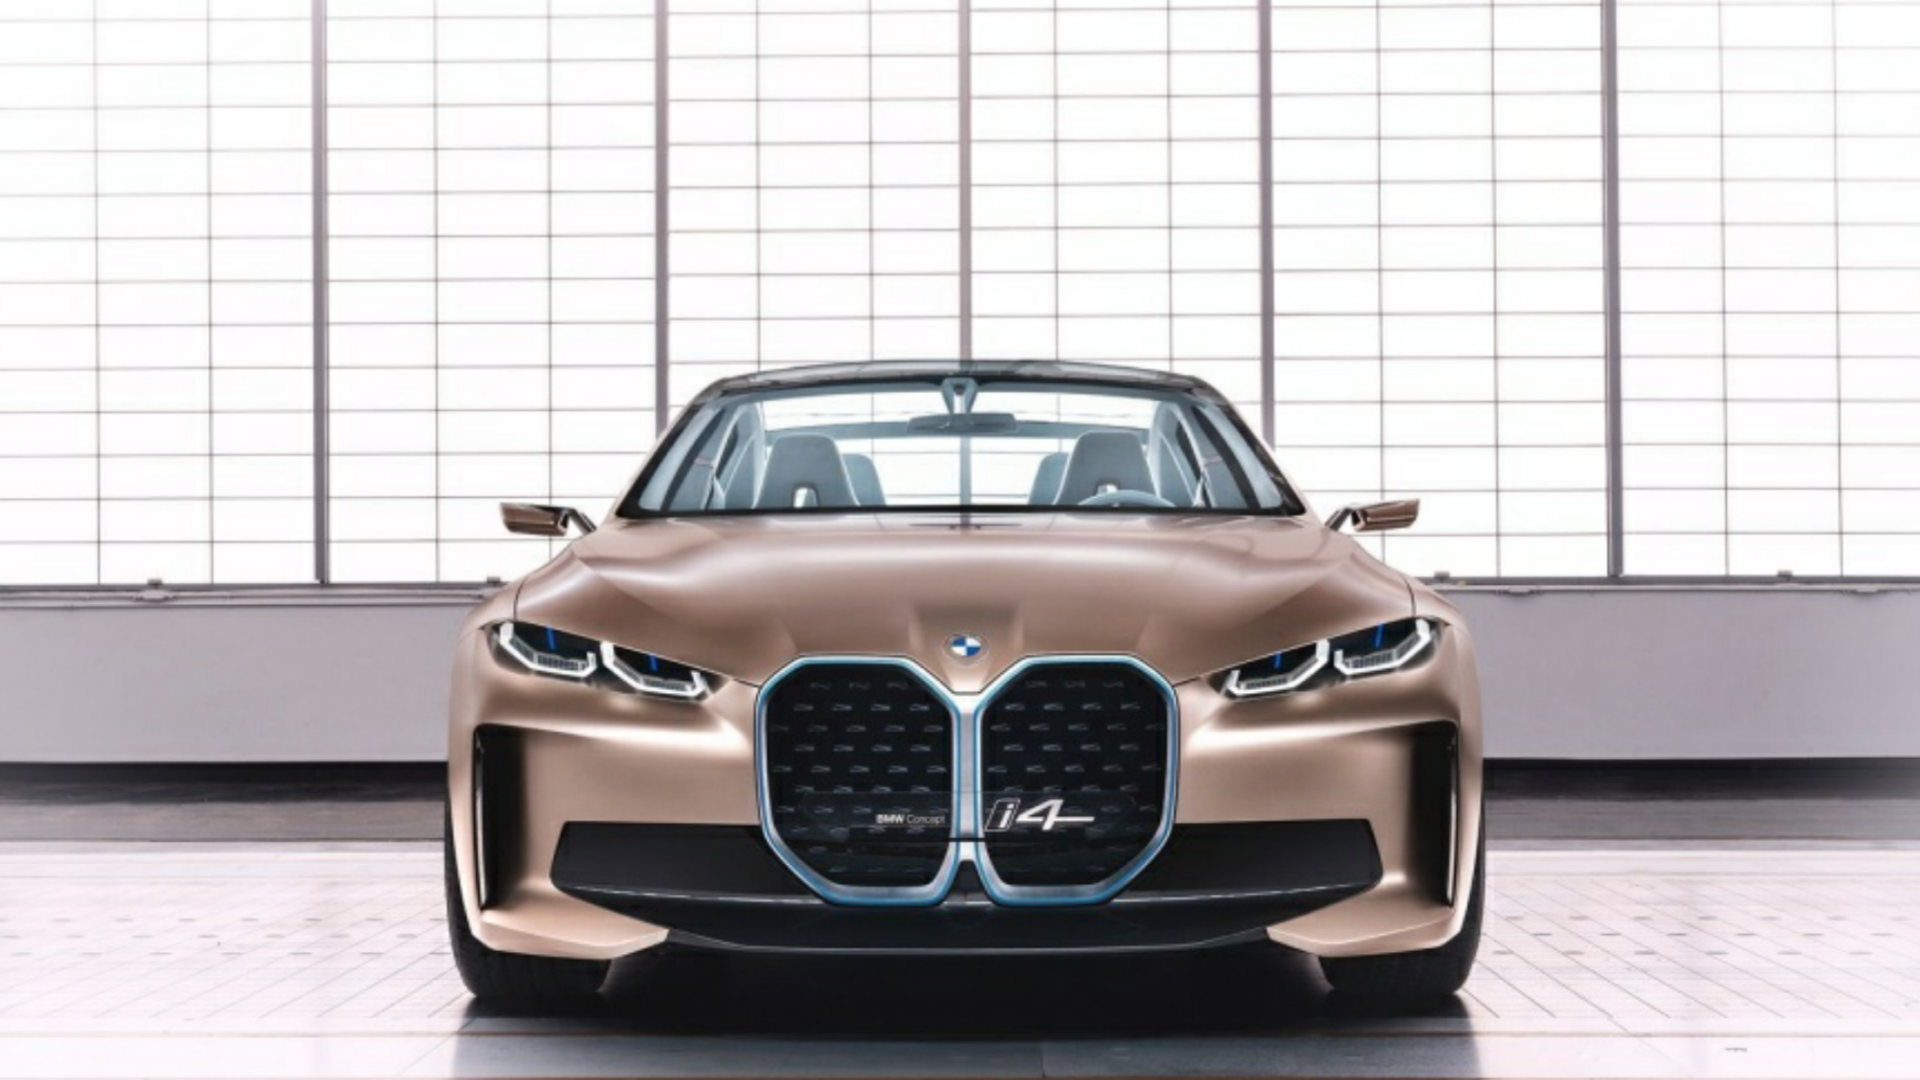 شركة BMW عام 2021 أطلاق أول سيارة رياضية كهربائية i4